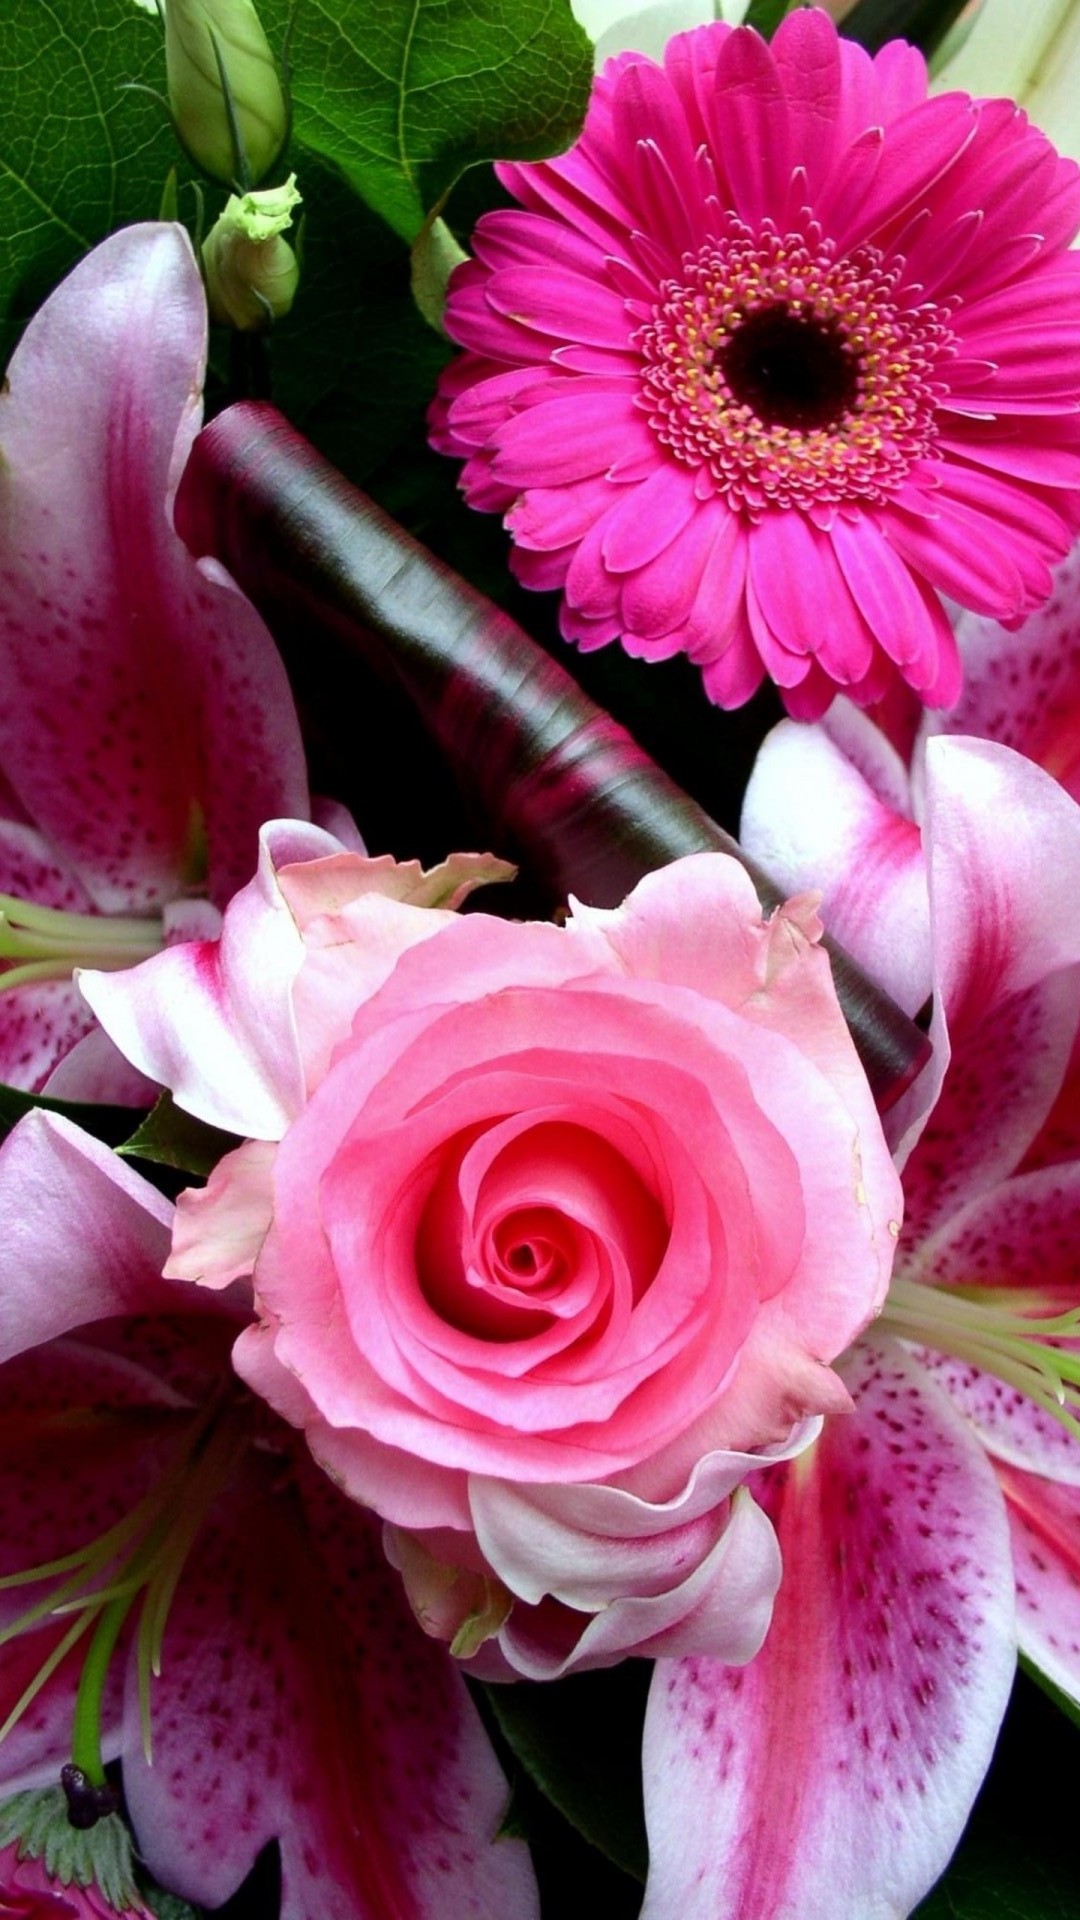 iPhone Wallpaper HD Pink Flower Resolution 1080x1920